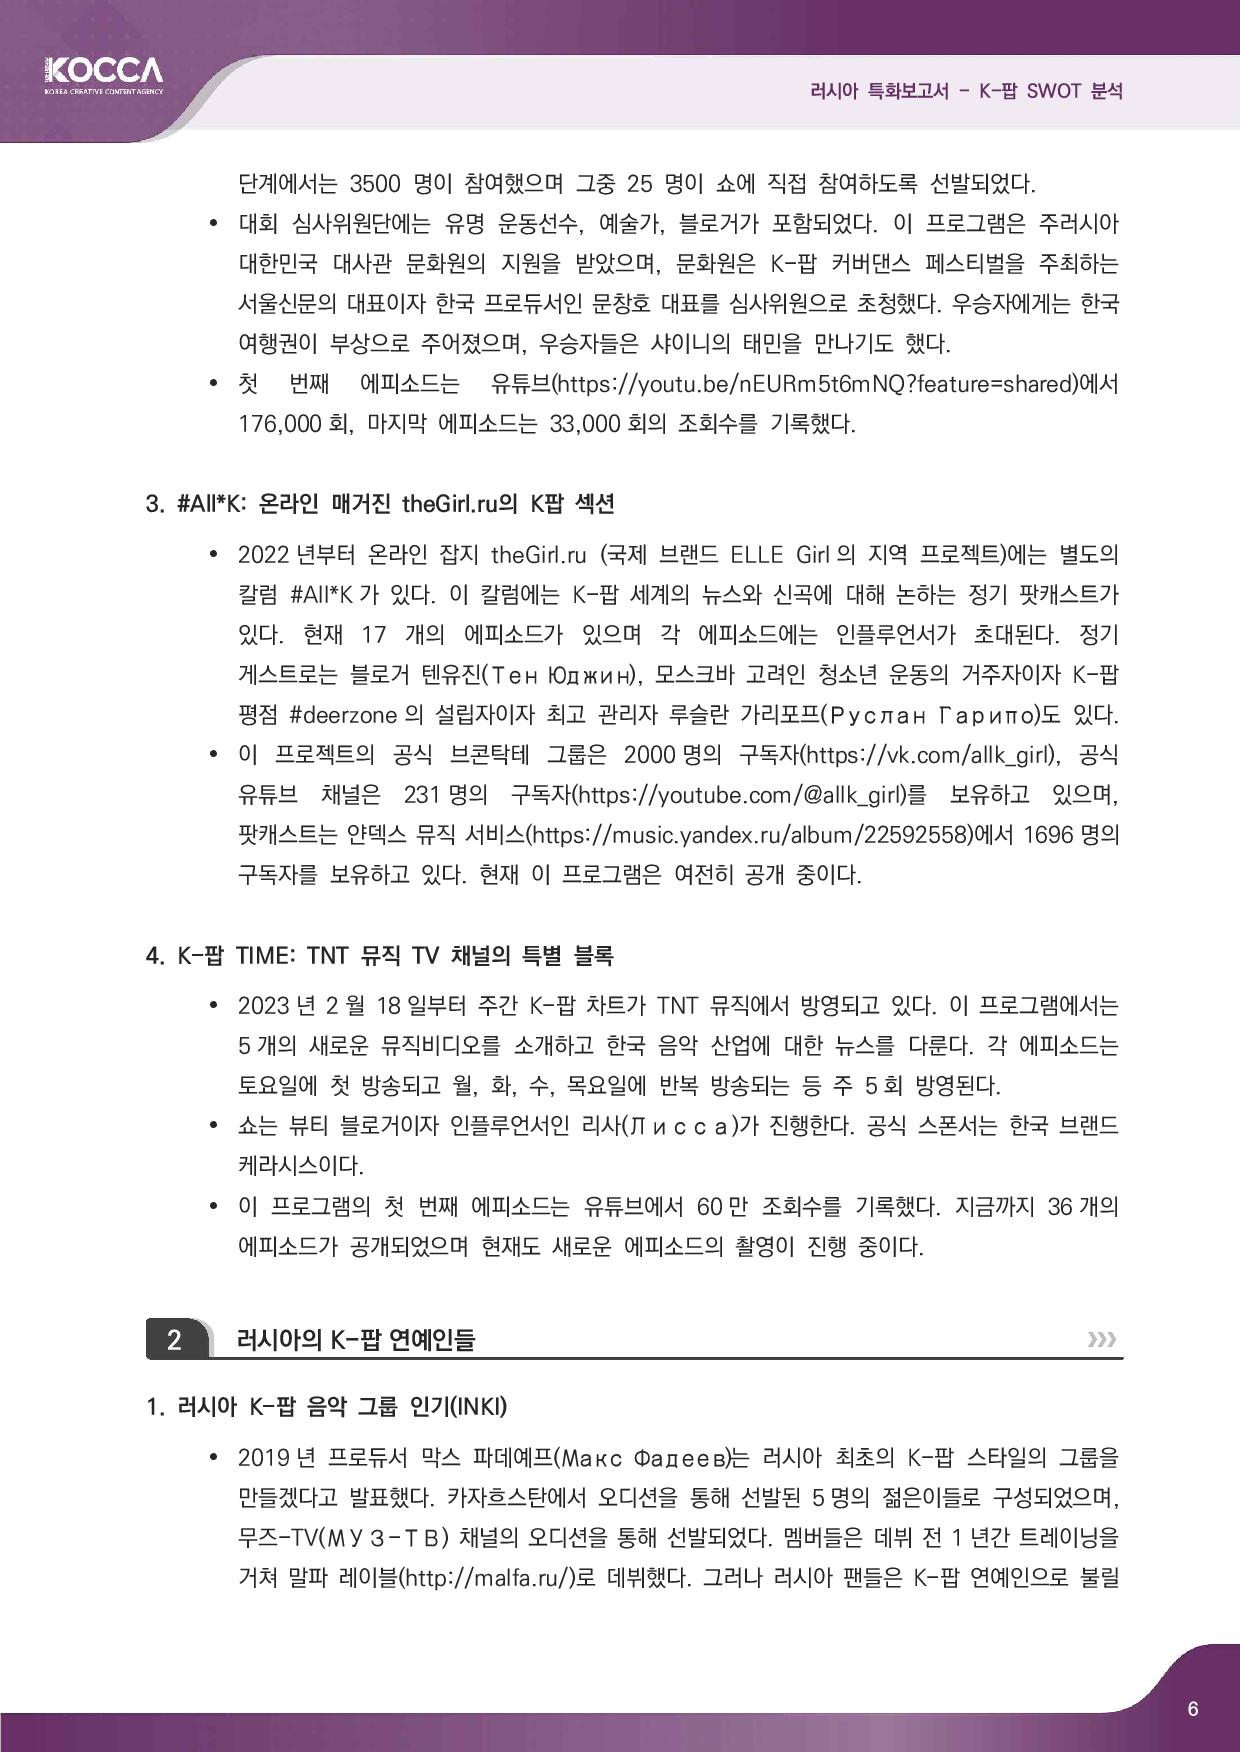 2. 러시아 특화보고서_K-pop SWOT 분석 (3)-page-008.jpg